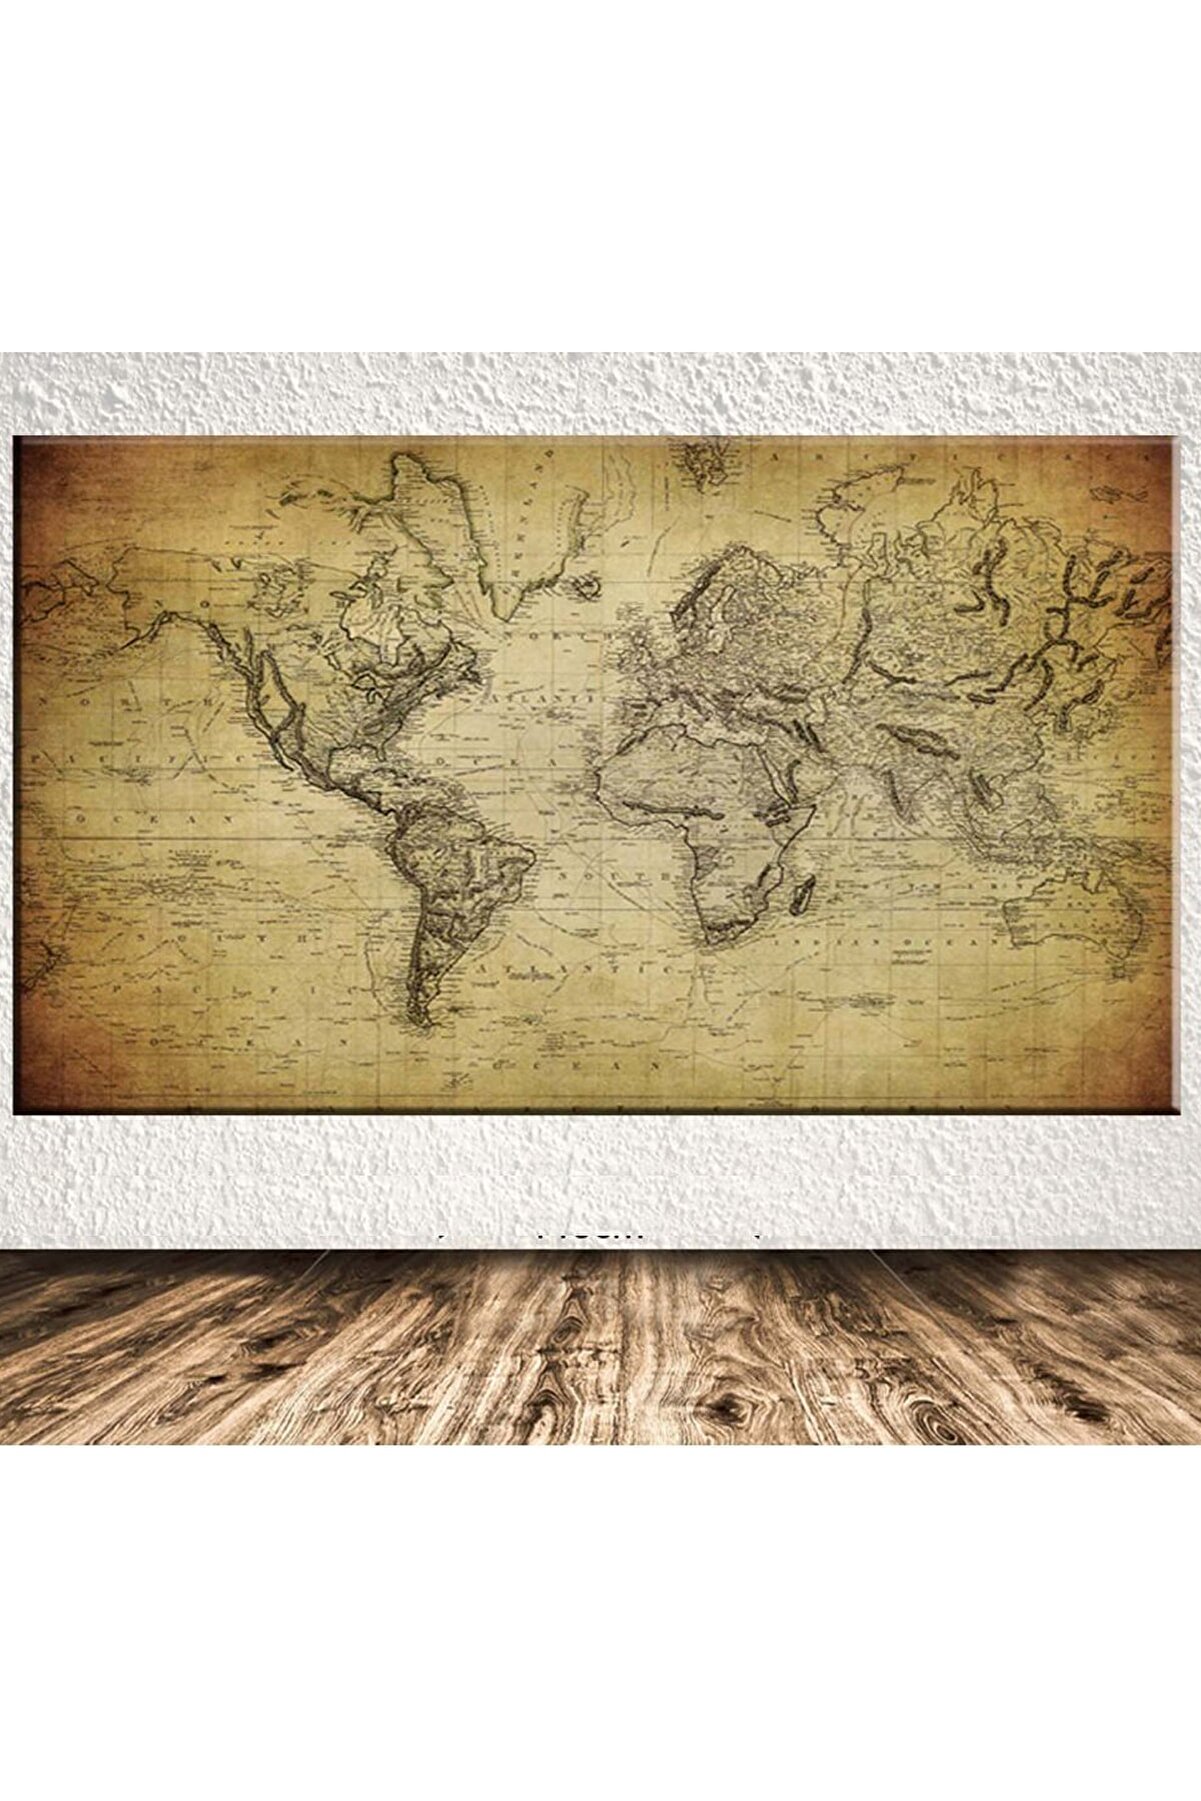 Shop365 Dev Boyut Dünya Haritası Kanvas Tablo Sb-12363